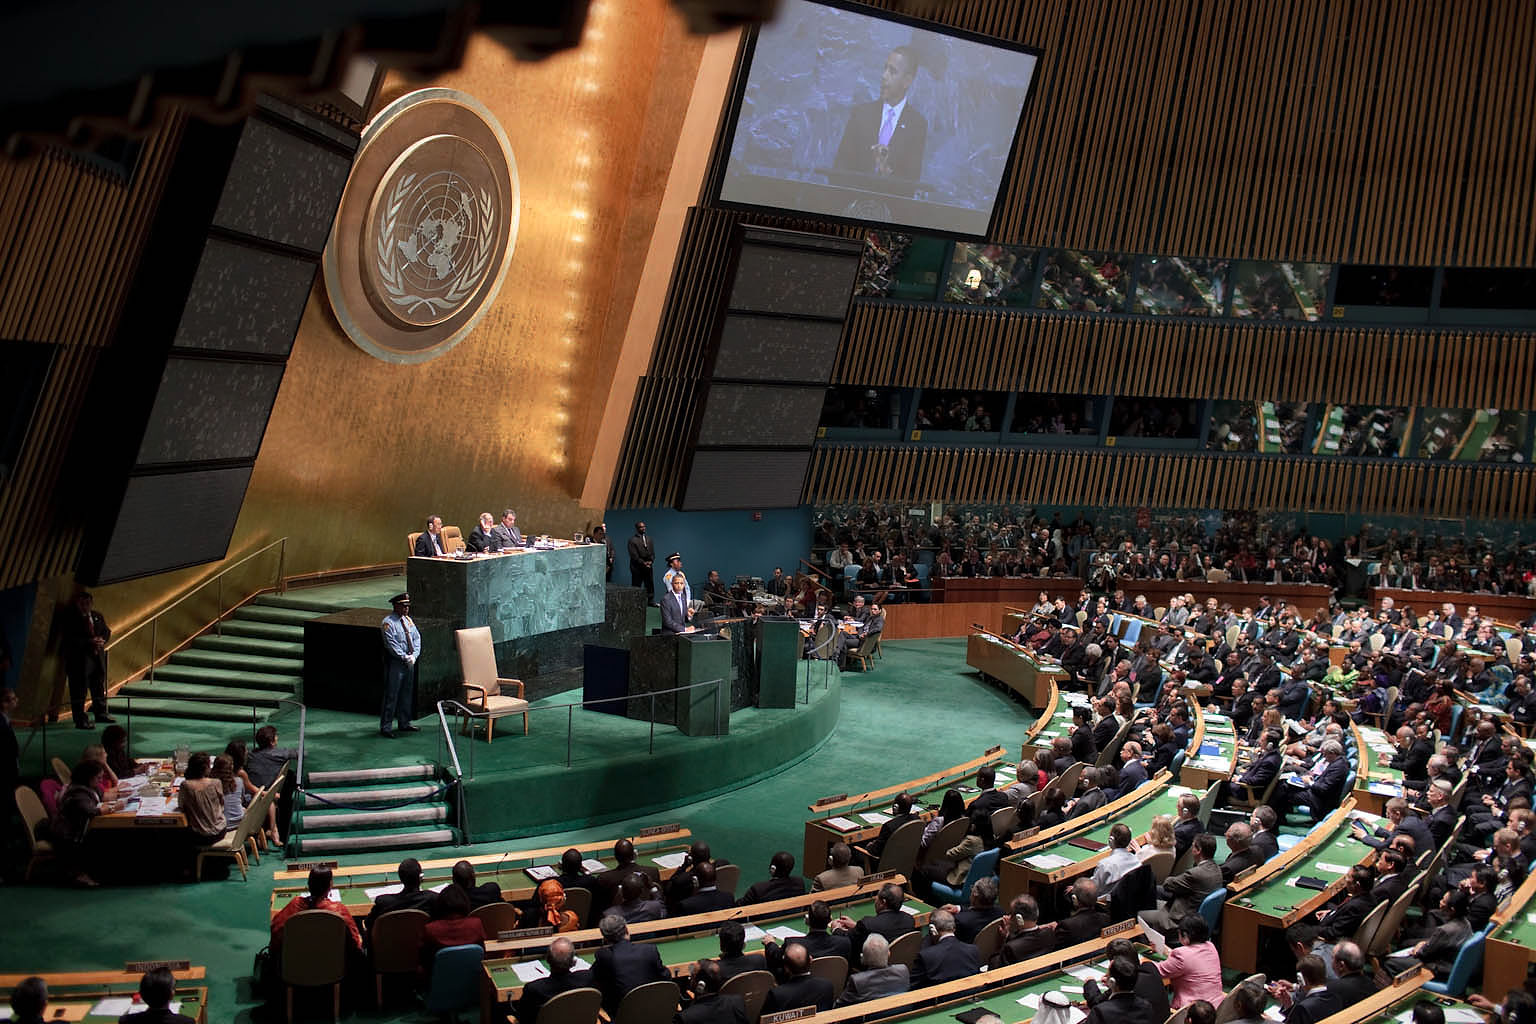 Зал оон. Зал заседаний ООН Нью Йорк. Генеральная Ассамблея ООН Нью-Йорк. Зал Генеральной Ассамблеи ООН. Генеральная Ассамблея ООН 1959.